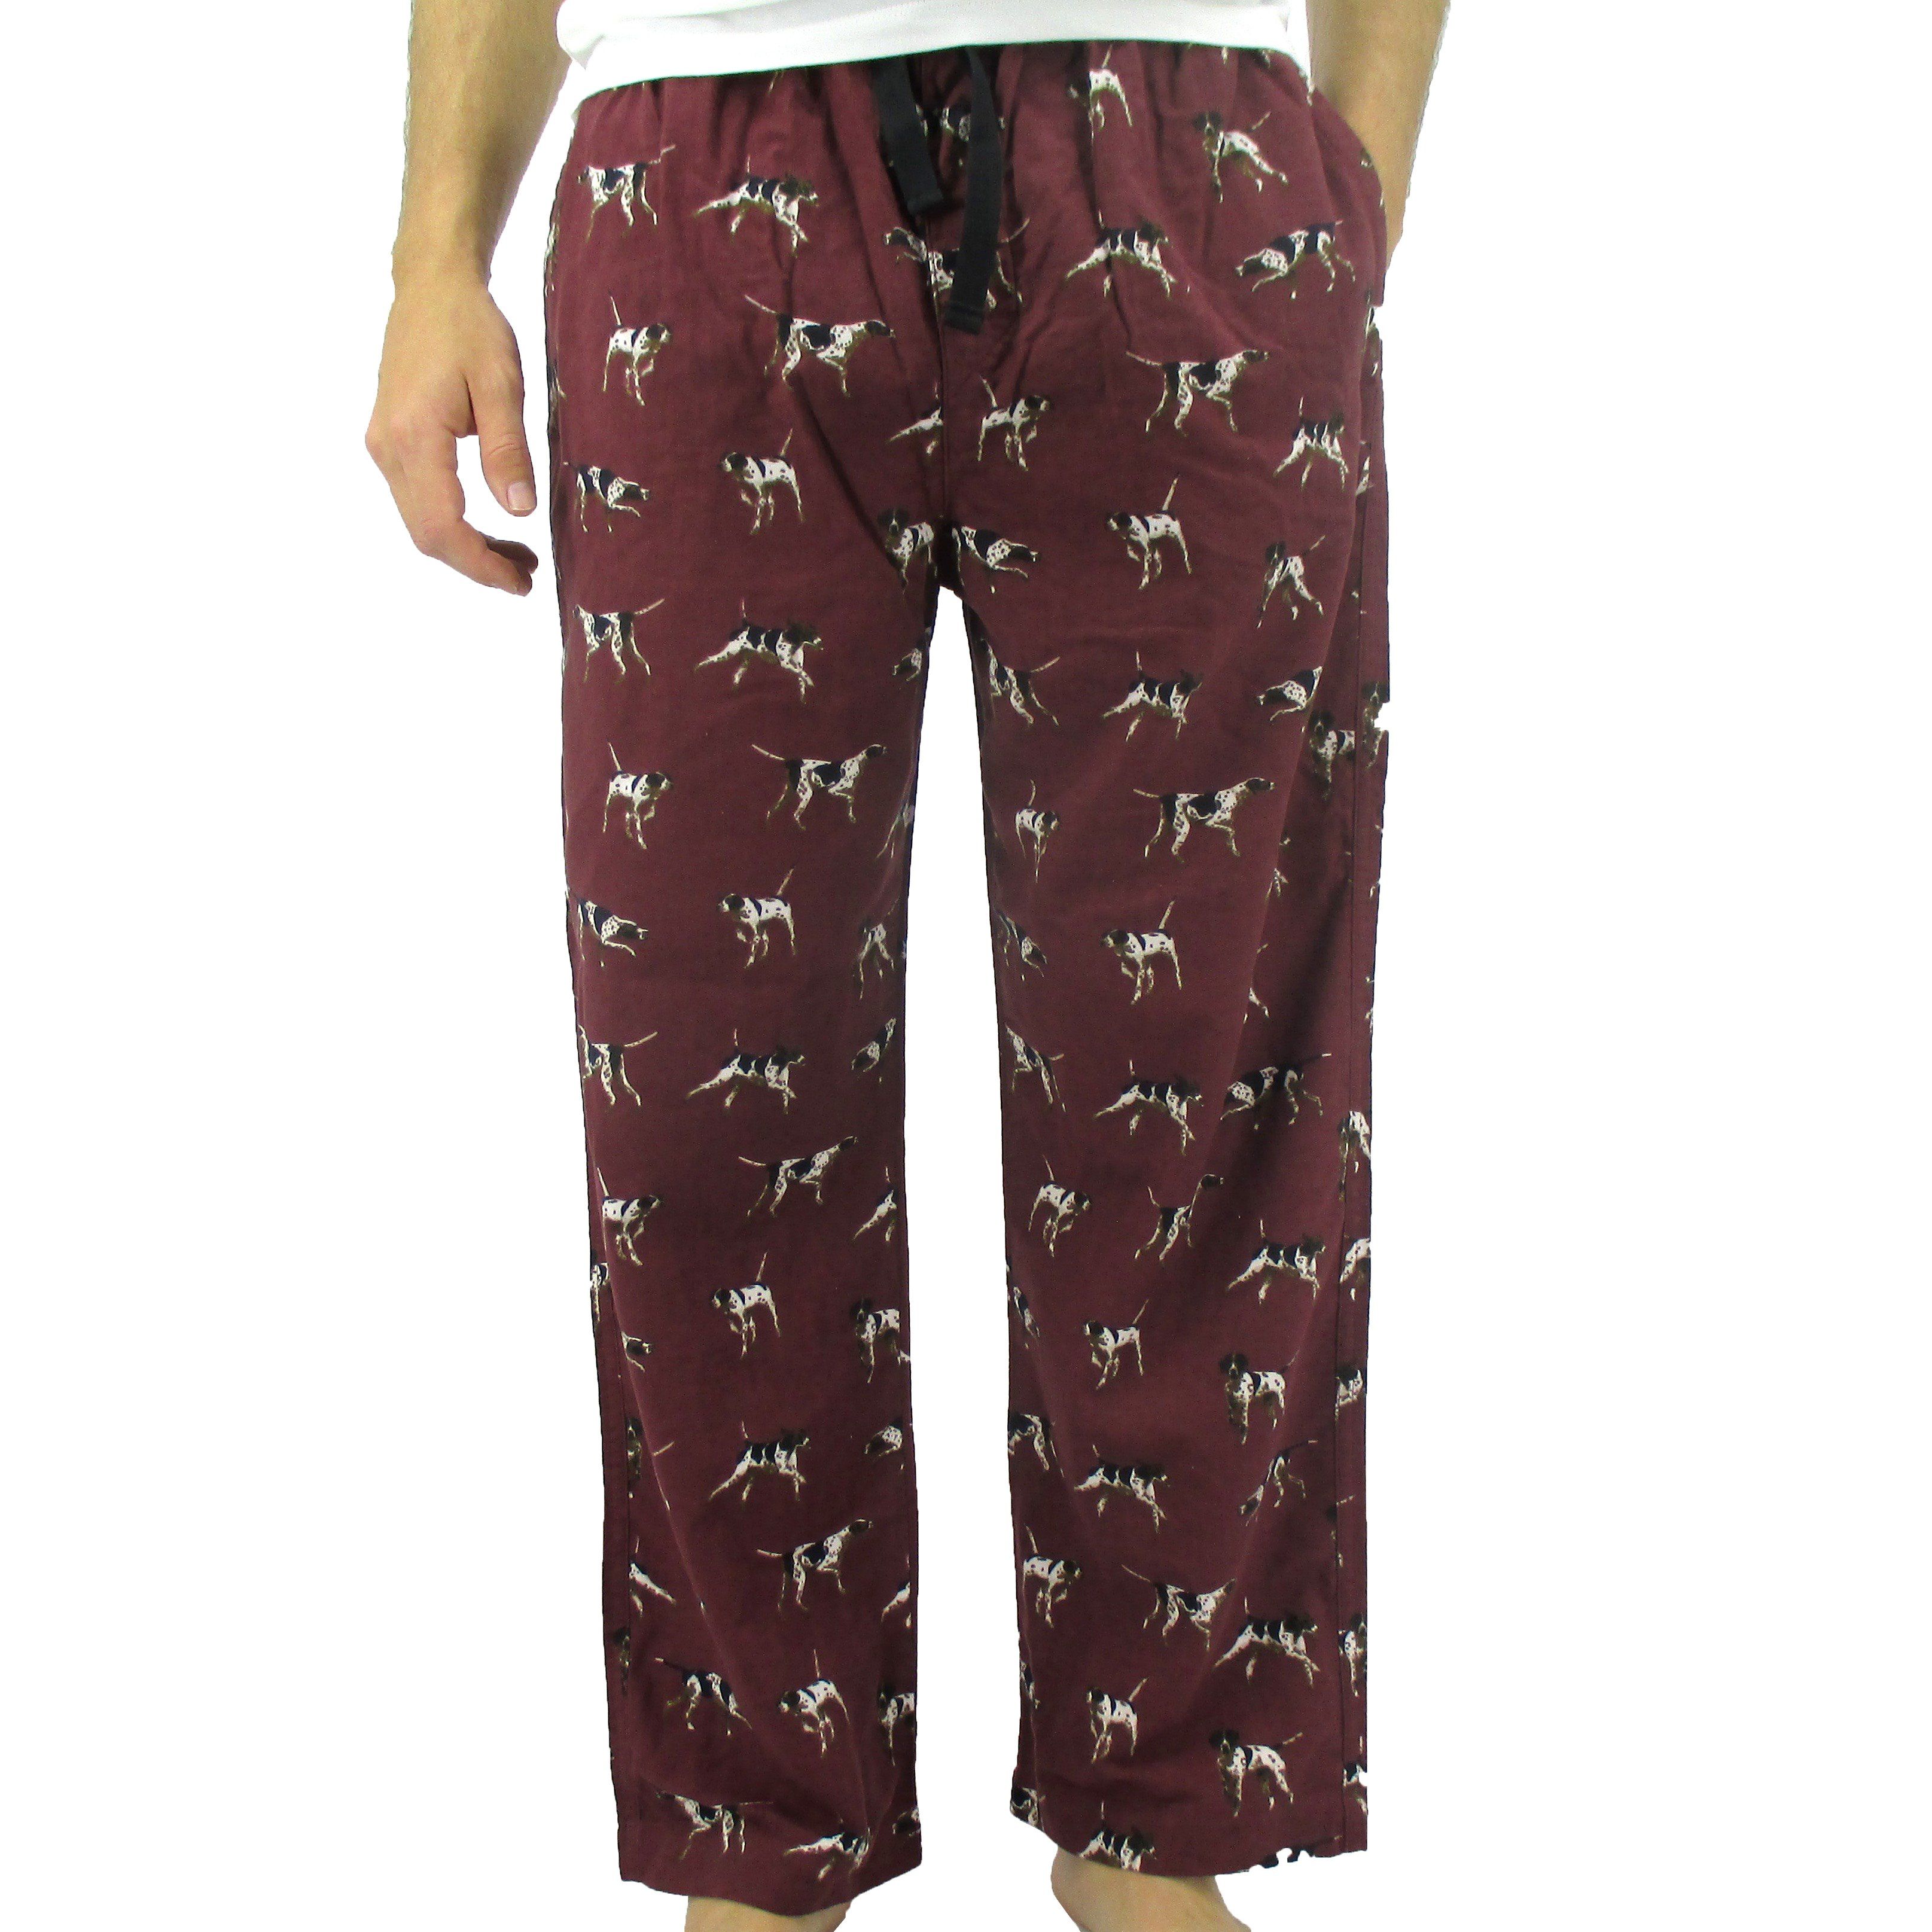 Rock Atoll Sleepwear. Men's Flannel Pyjama Bottoms with Bassett Hound Dog All Over Print in Dark Red